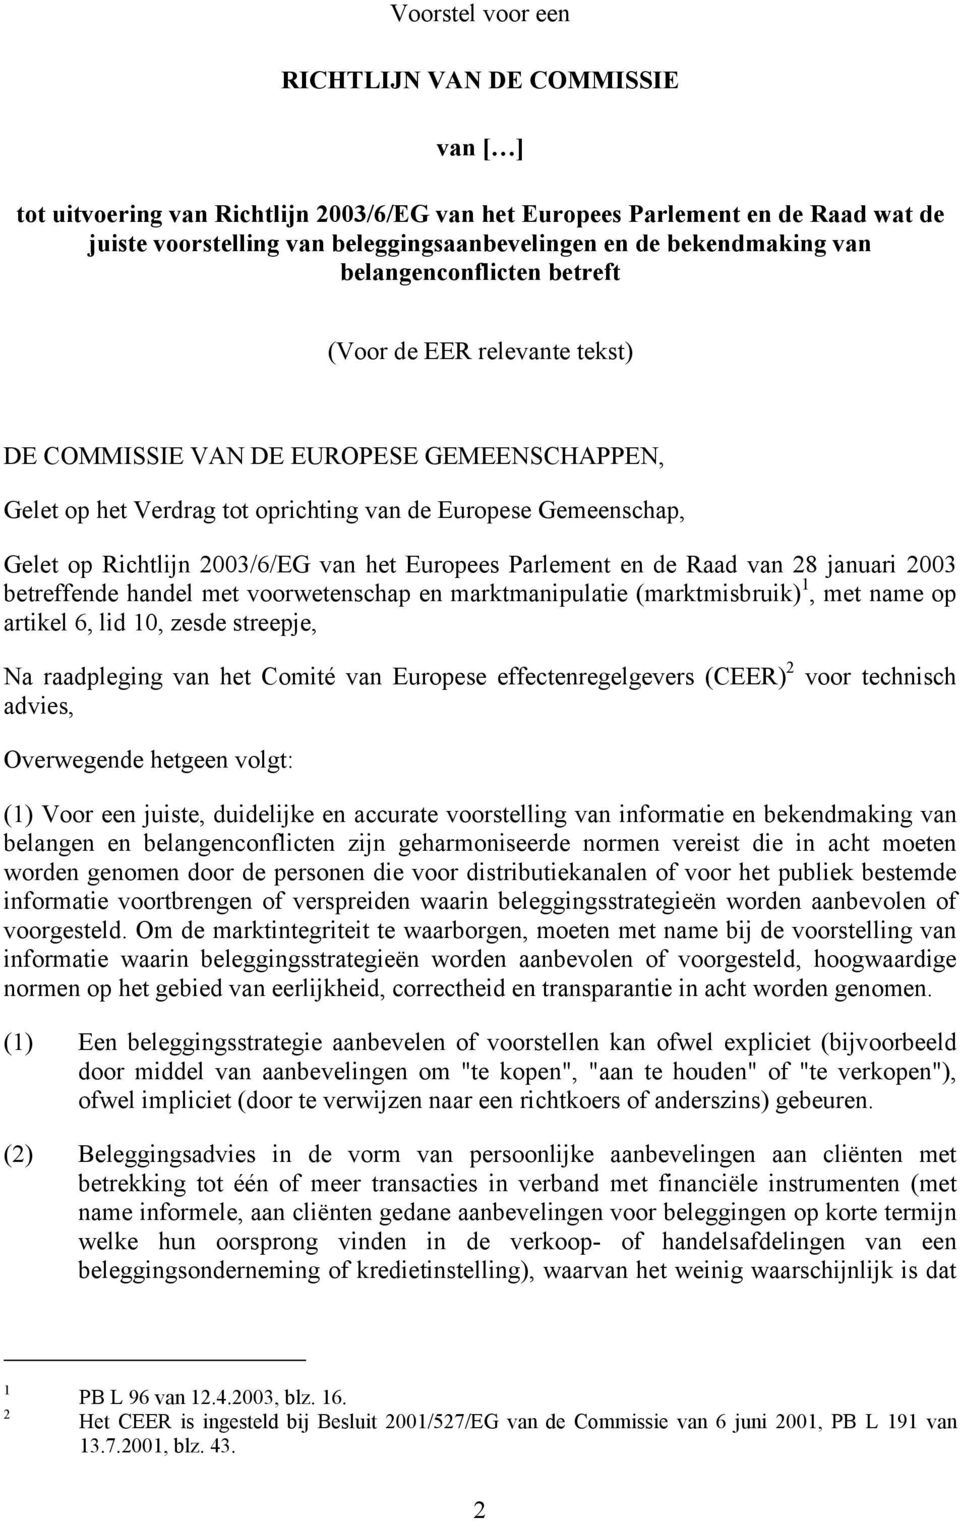 Richtlijn 2003/6/EG van het Europees Parlement en de Raad van 28 januari 2003 betreffende handel met voorwetenschap en marktmanipulatie (marktmisbruik) 1, met name op artikel 6, lid 10, zesde